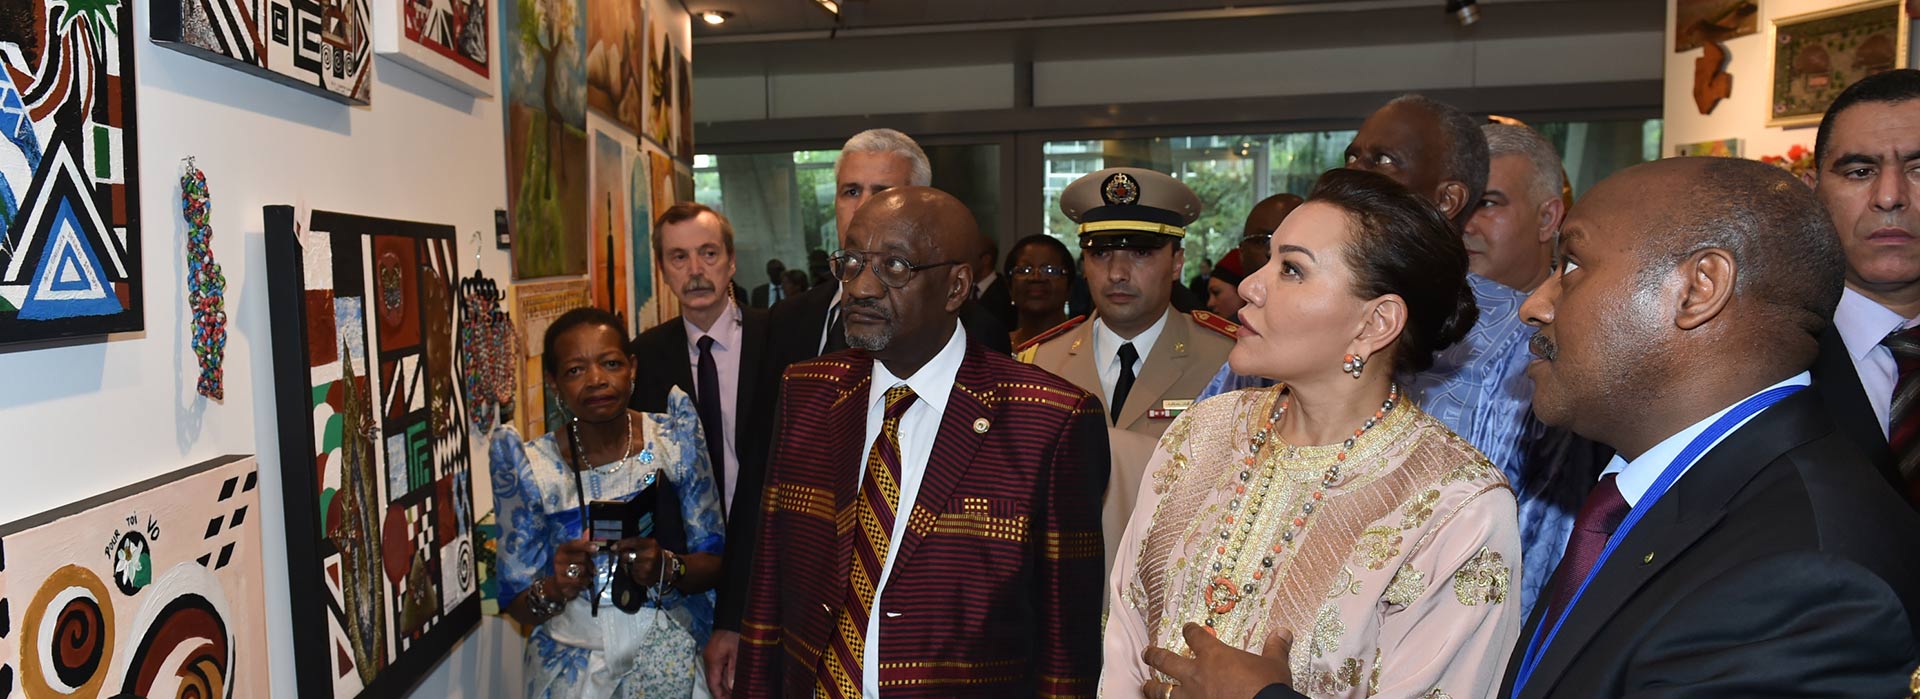 Paris – 23 May 2016 : HRH Princess Lalla Hasnaa, patron of UNESCO’s Africa week